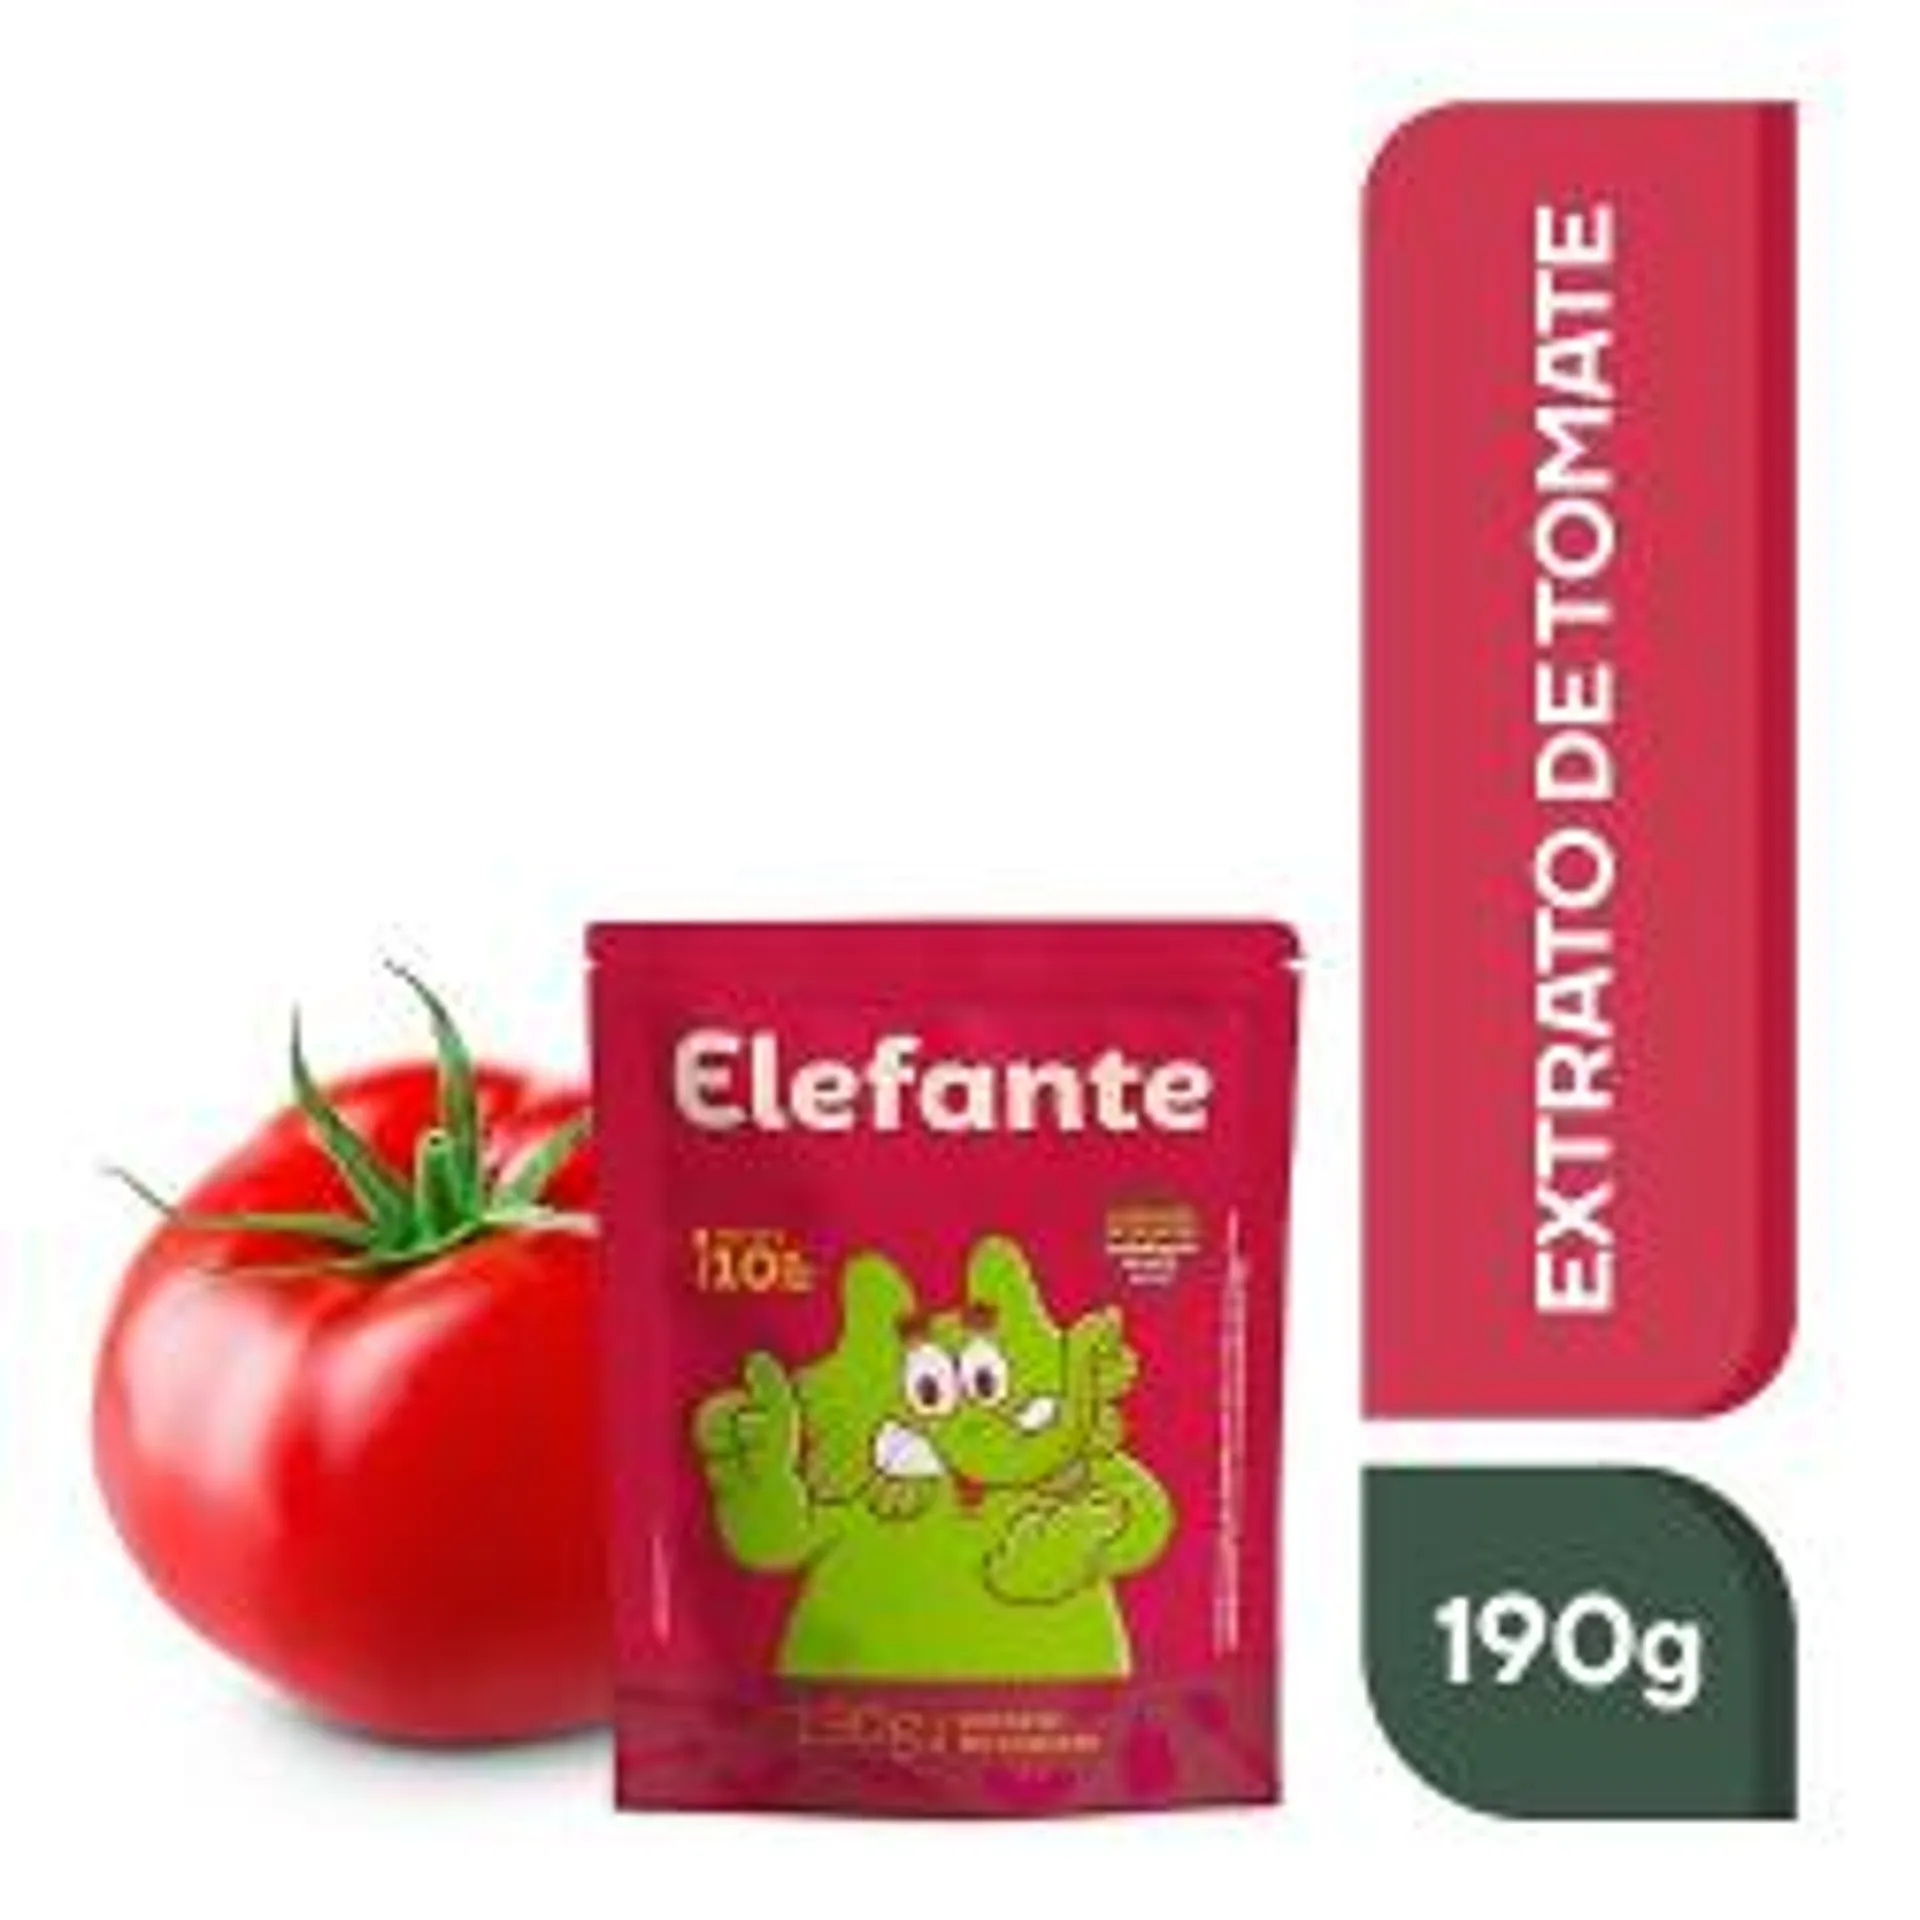 Extato De Tomate Elefante 190g